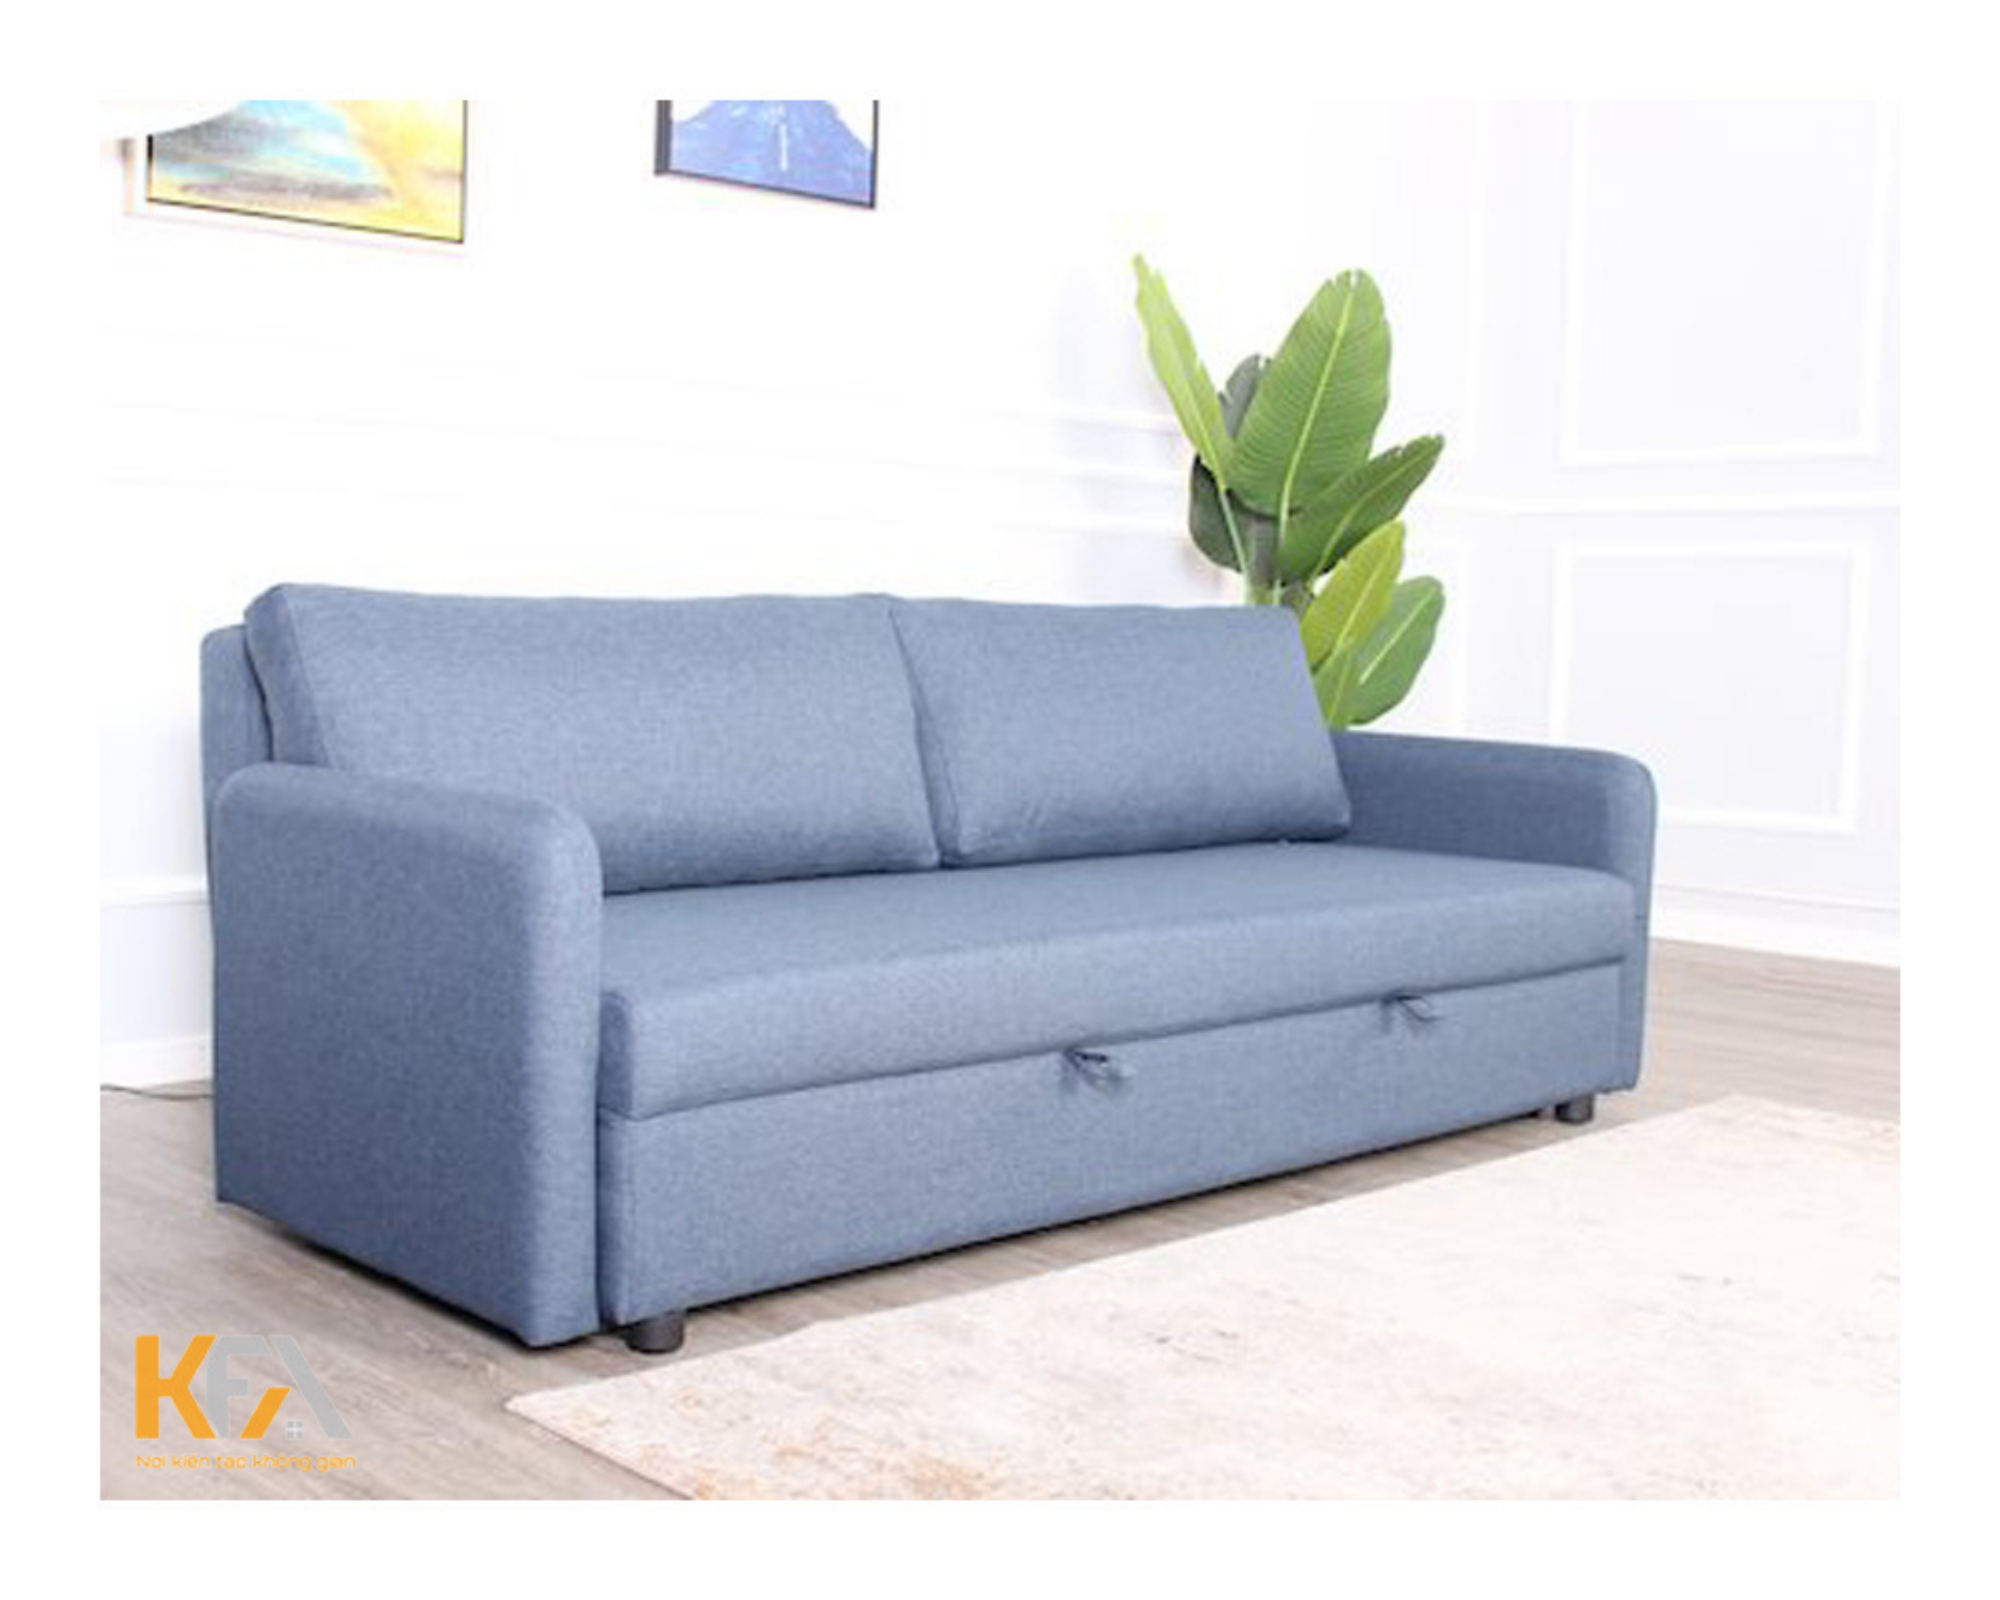 Sofa gường bằng vải nhẹ nhàng